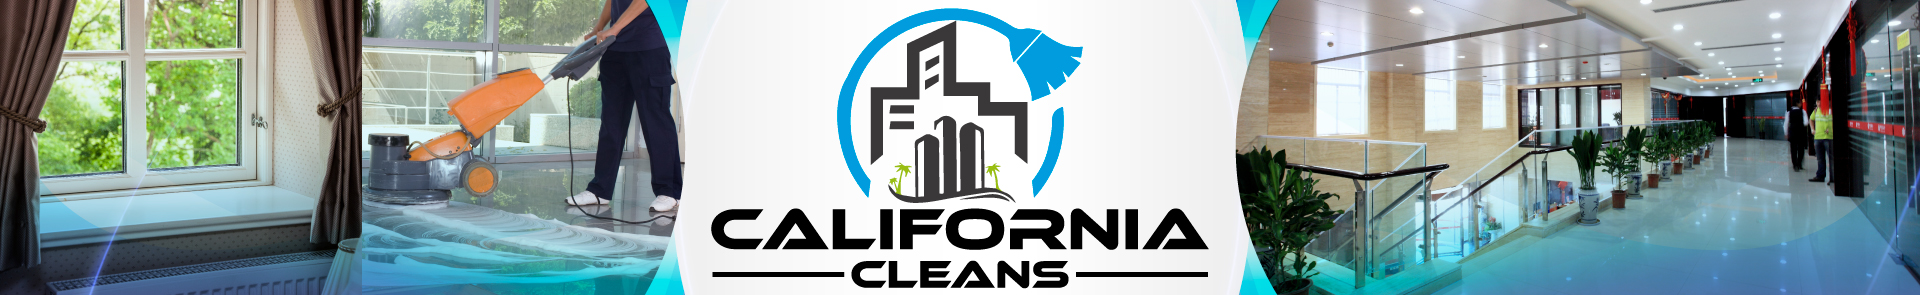 California Cleans - Header